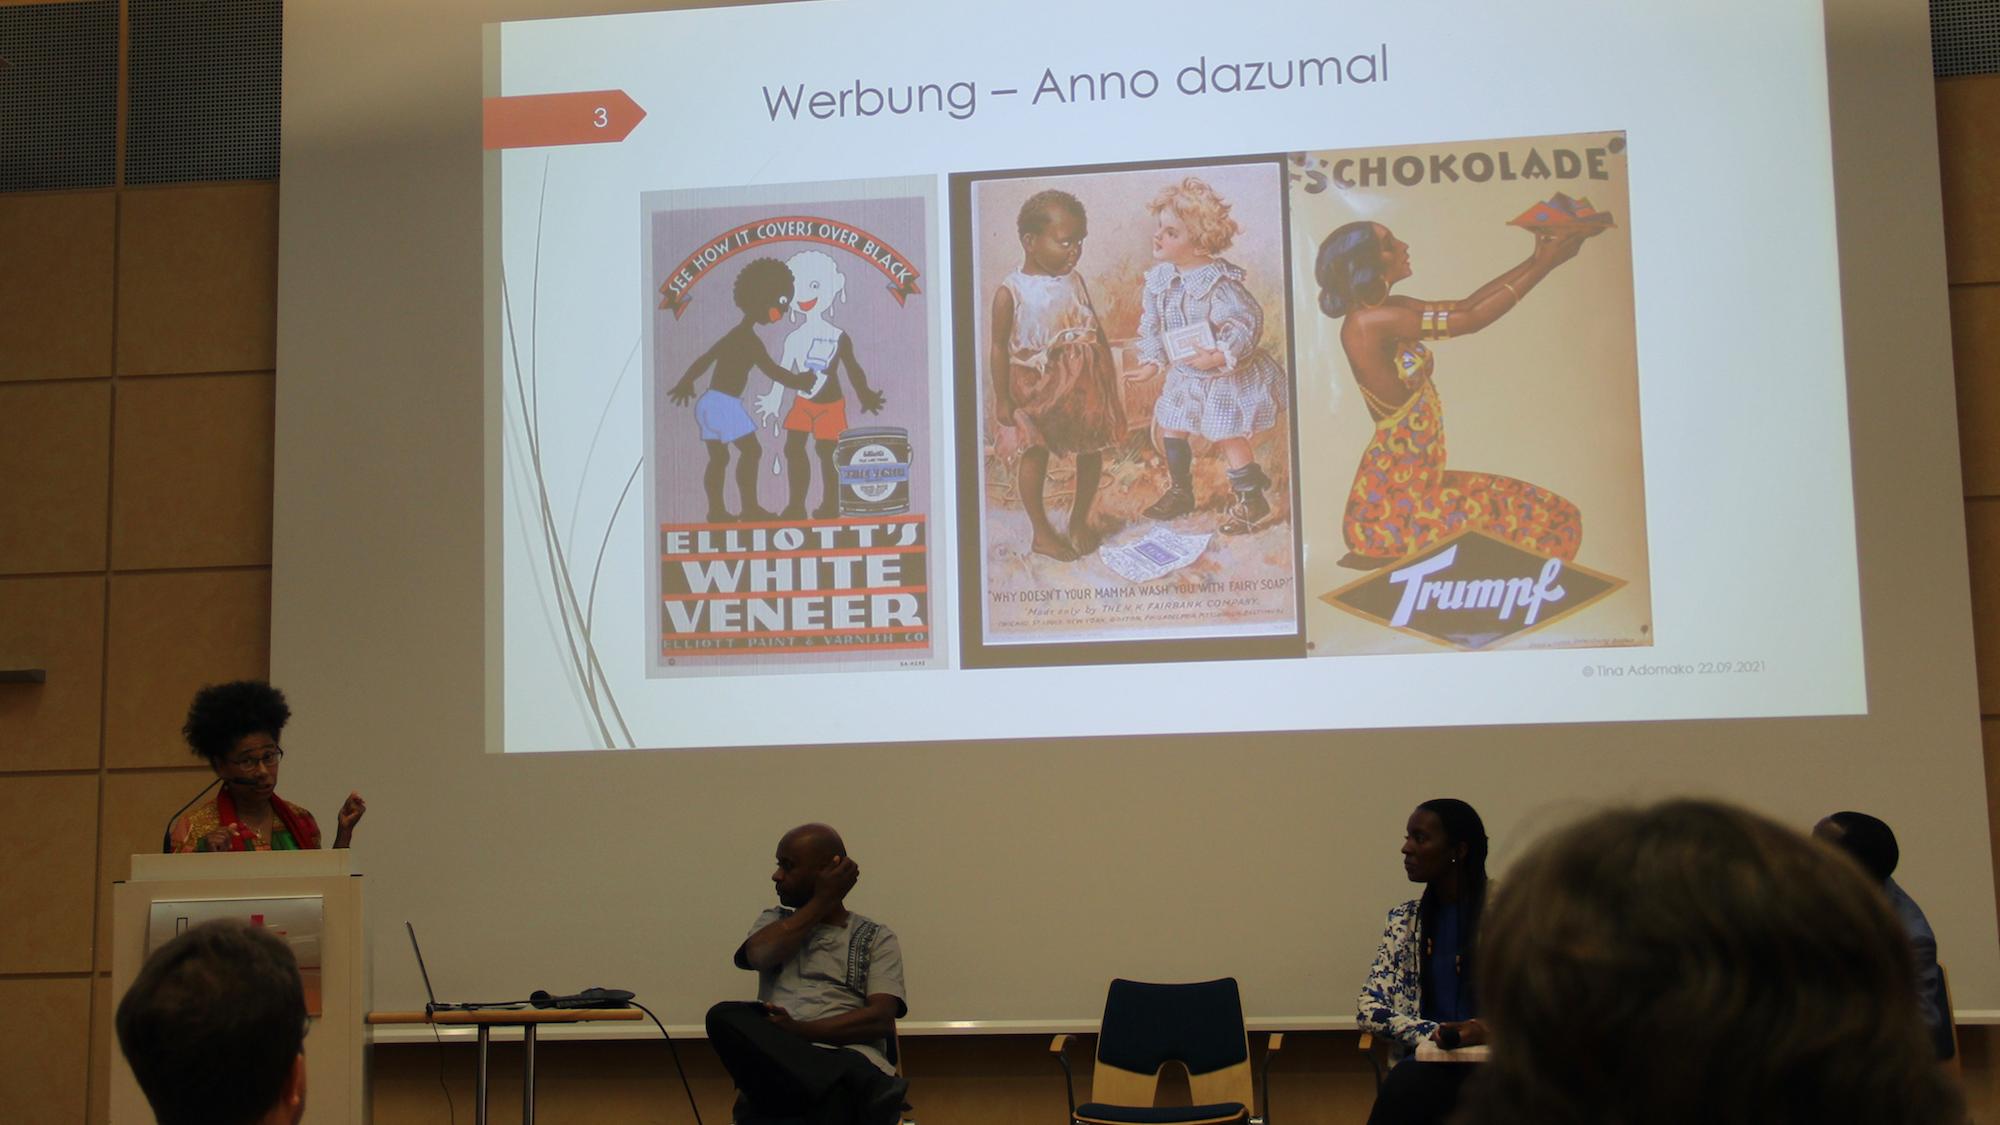 Tina Adomako zeigt anhand von Bildern aus der Werbung, wie ein rassistisches Bild von Afrika bis heute nachwirkt. (c) Andrea Thomas